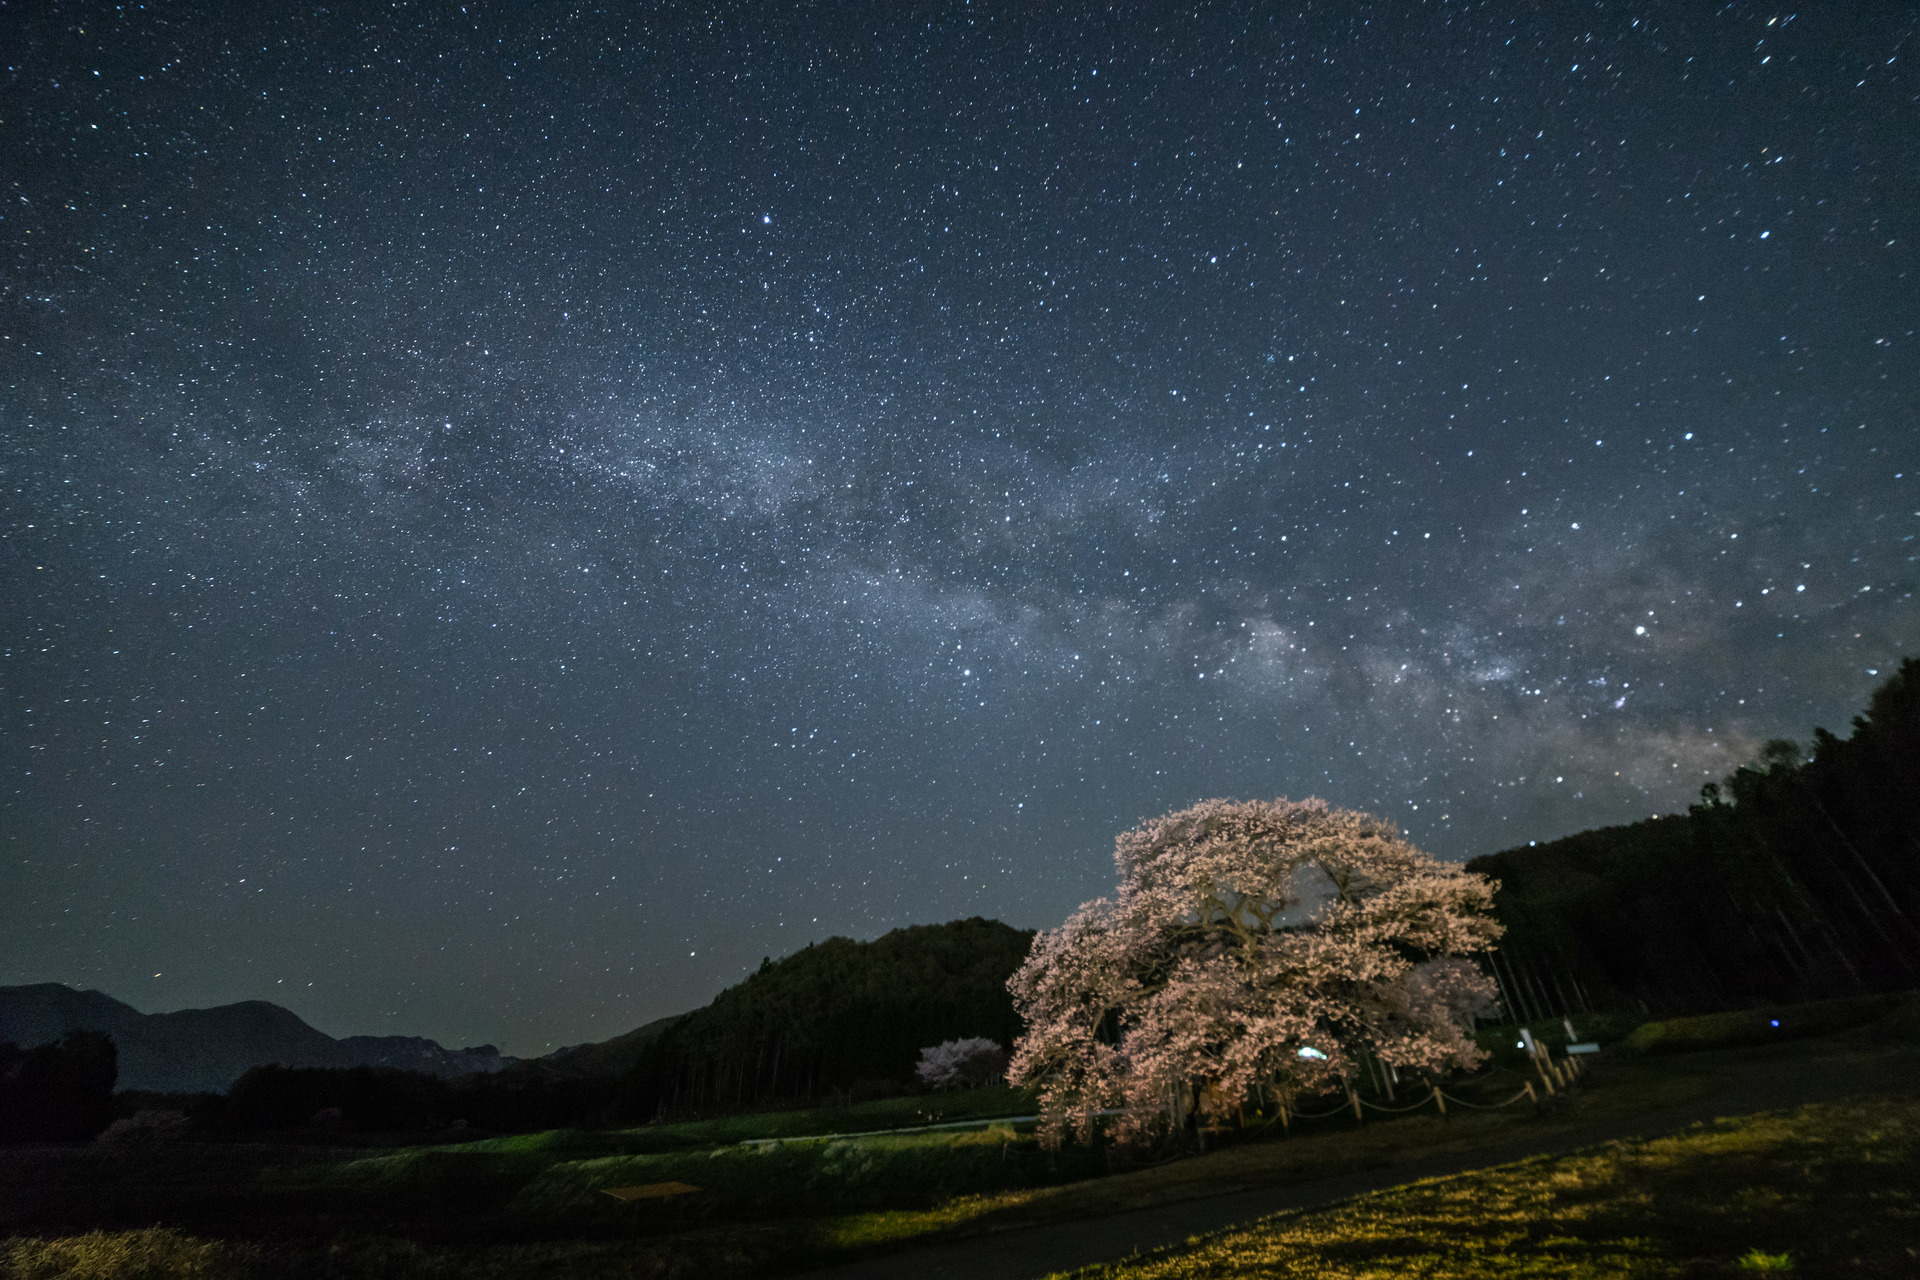 信州高山村 黒部のエドヒガン桜と天の川を徹夜で撮影1 3 ブログ